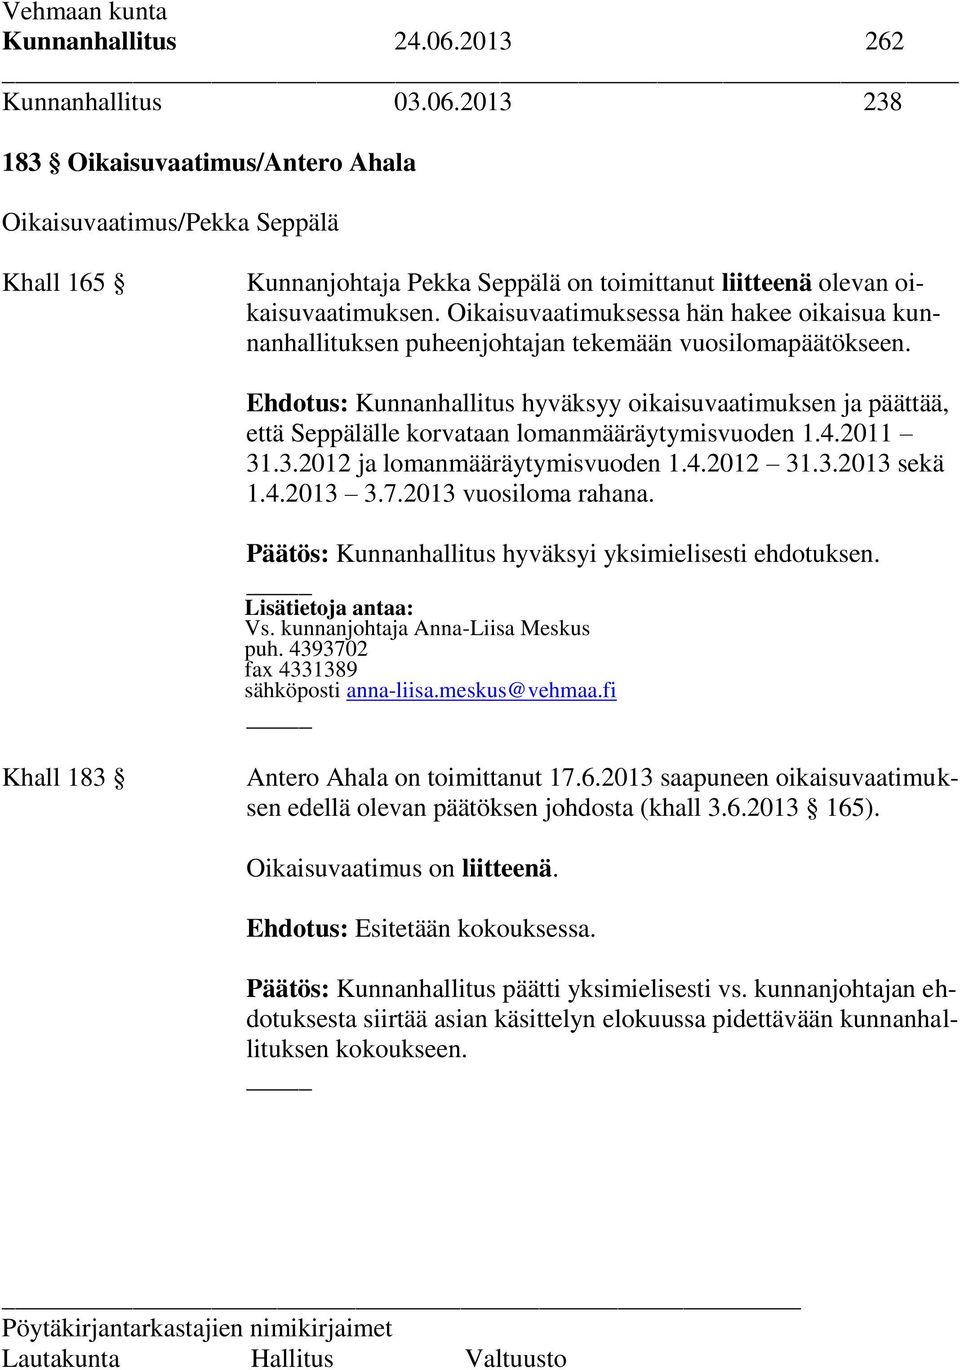 Ehdotus: Kunnanhallitus hyväksyy oikaisuvaatimuksen ja päättää, että Seppälälle korvataan lomanmääräytymisvuoden 1.4.2011 31.3.2012 ja lomanmääräytymisvuoden 1.4.2012 31.3.2013 sekä 1.4.2013 3.7.